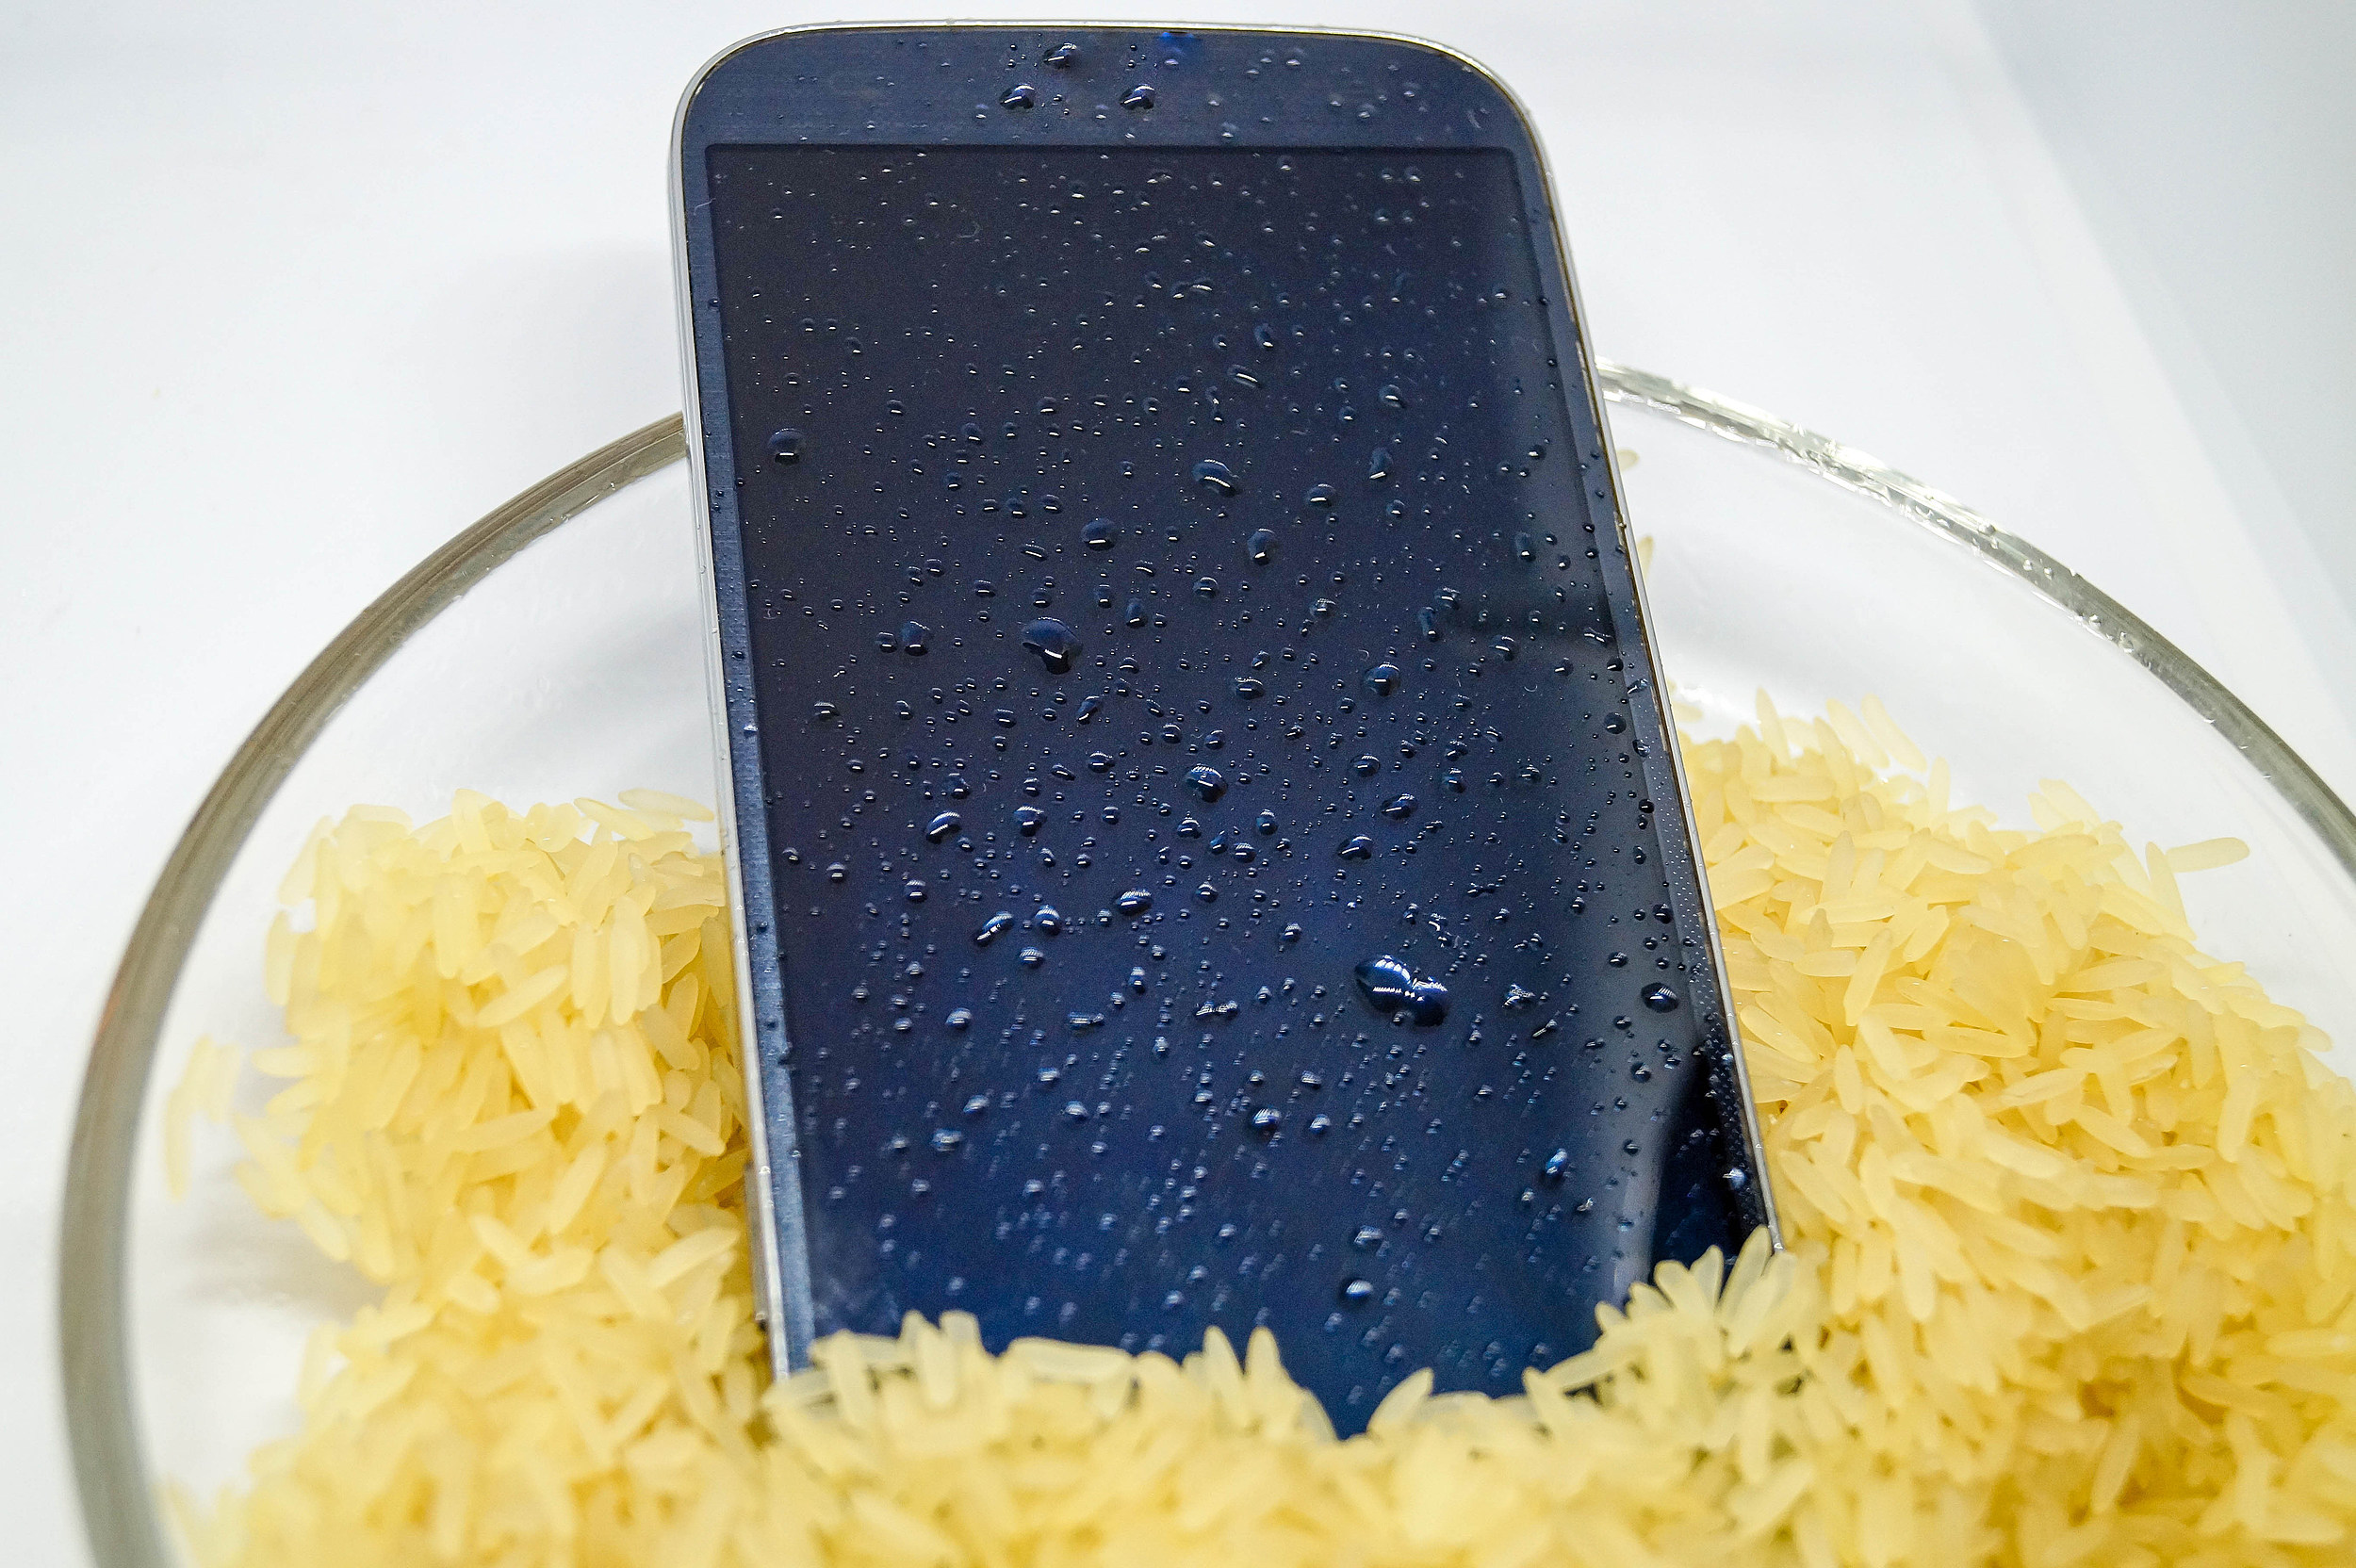 قرار دادن موبایل خیس در برنج